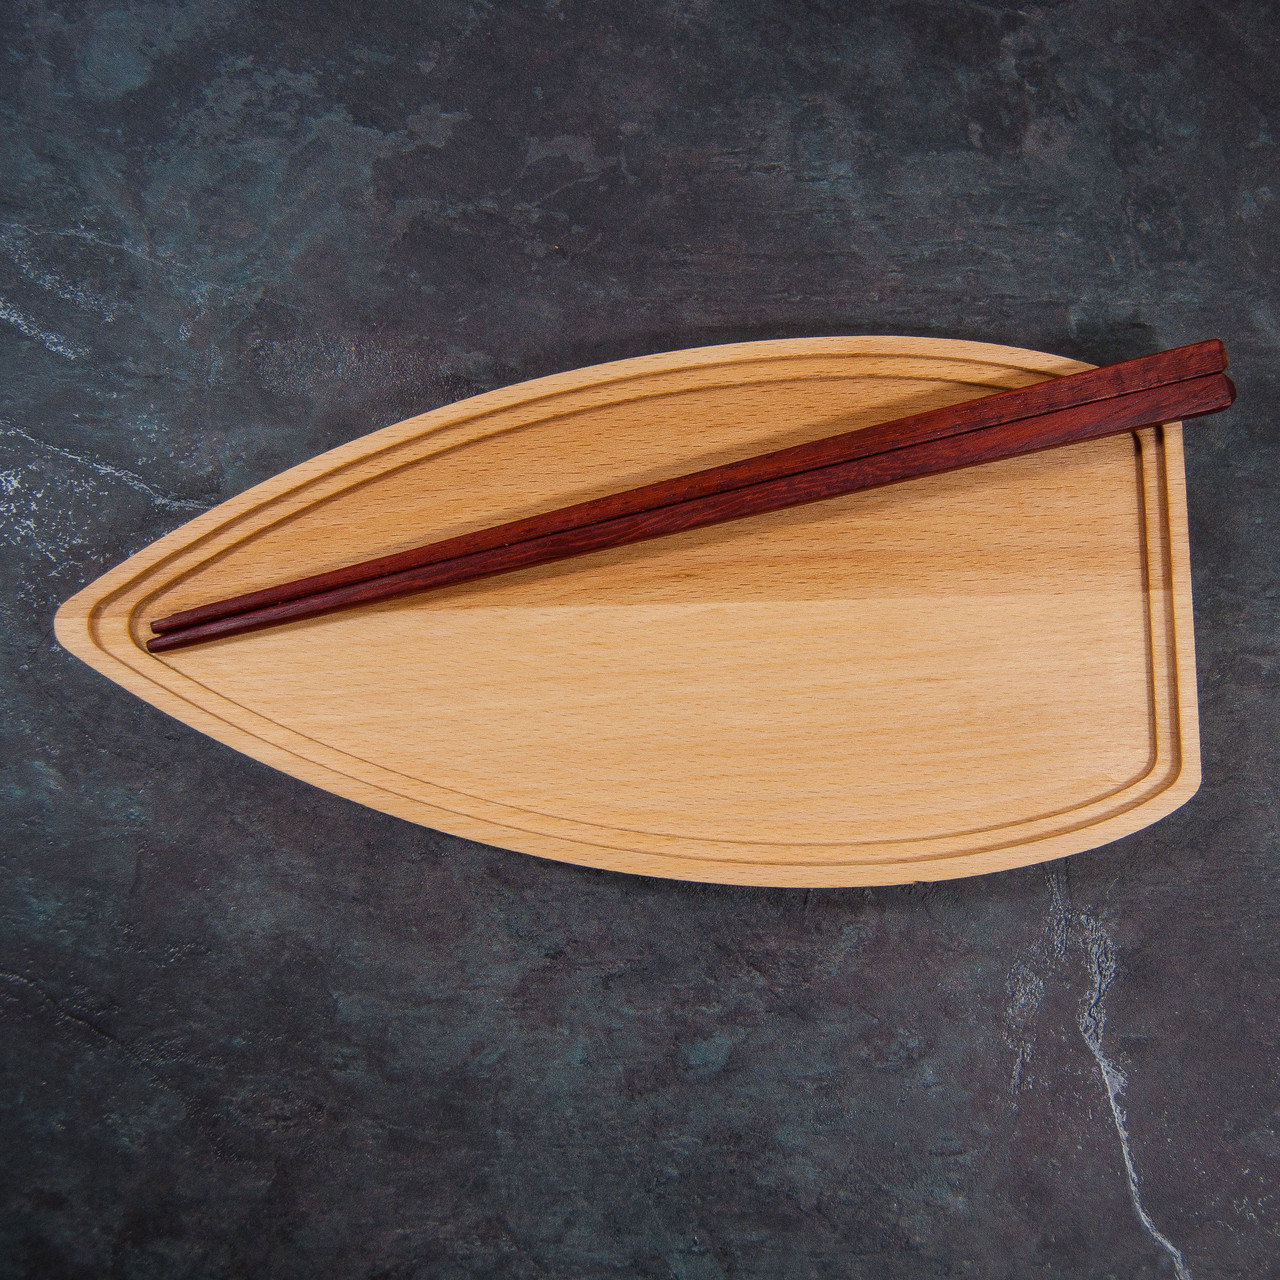 Сервірувальна дошка дерев'яна тарілка блюдо для подачі суші, ролів порційна "Човник" 290 х 140 х 20 мм